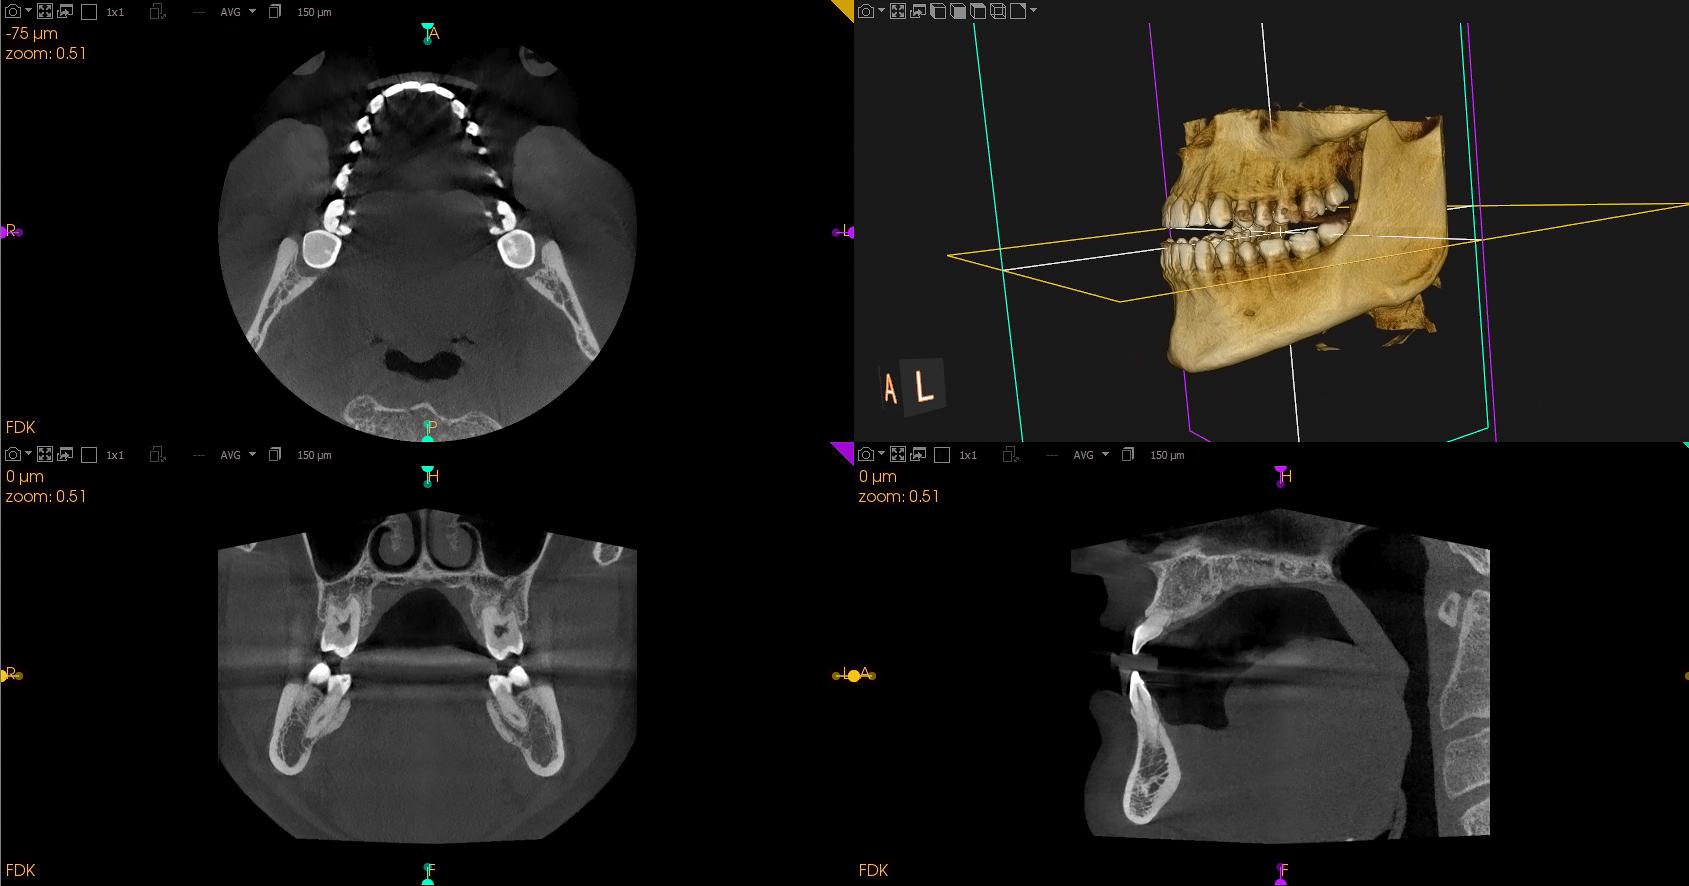 Quirónsalud Marbella incorpora la radiografía panorámica dental de alta resolución